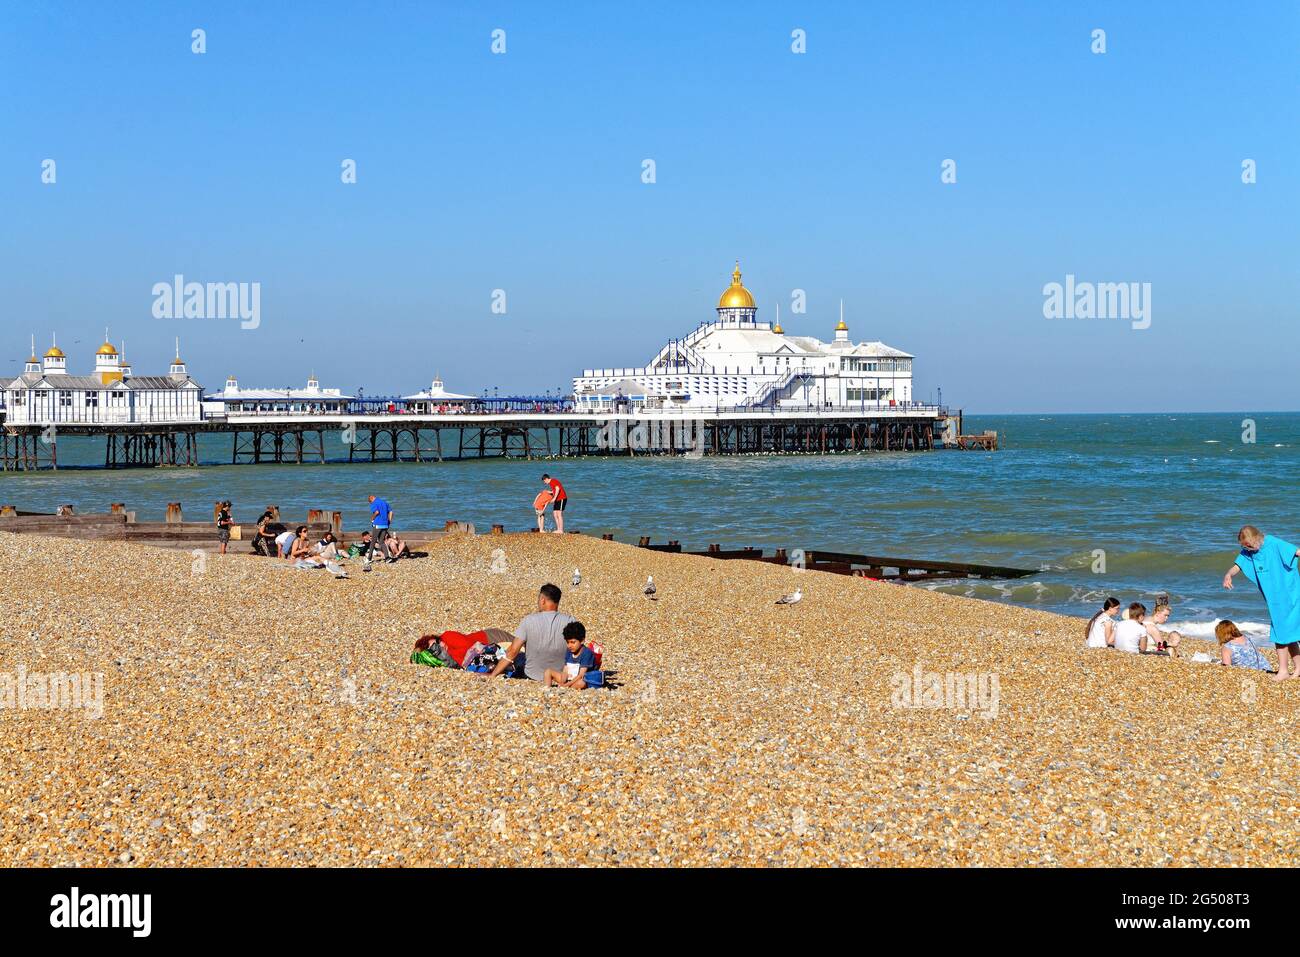 Eastbourne bord de mer jetée et plage lors d'une soirée ensoleillée d'été, East Sussex Angleterre Royaume-Uni Banque D'Images